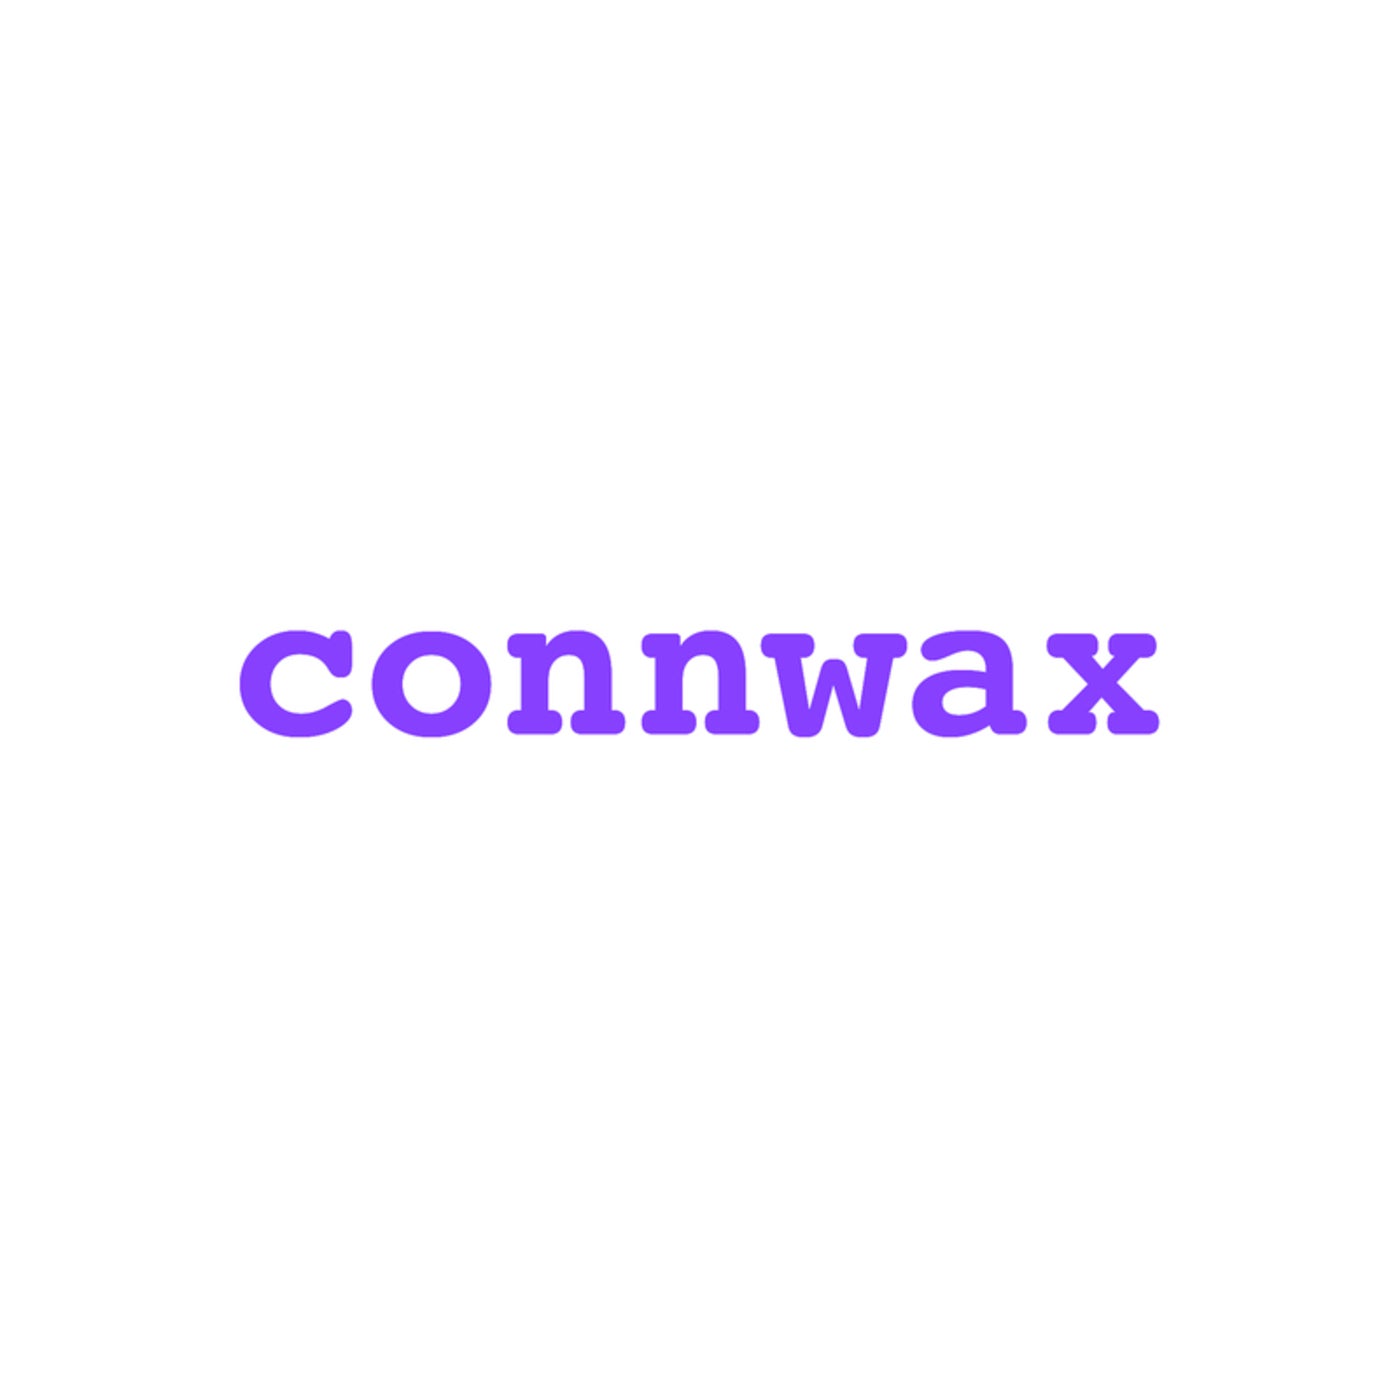 connwax 03